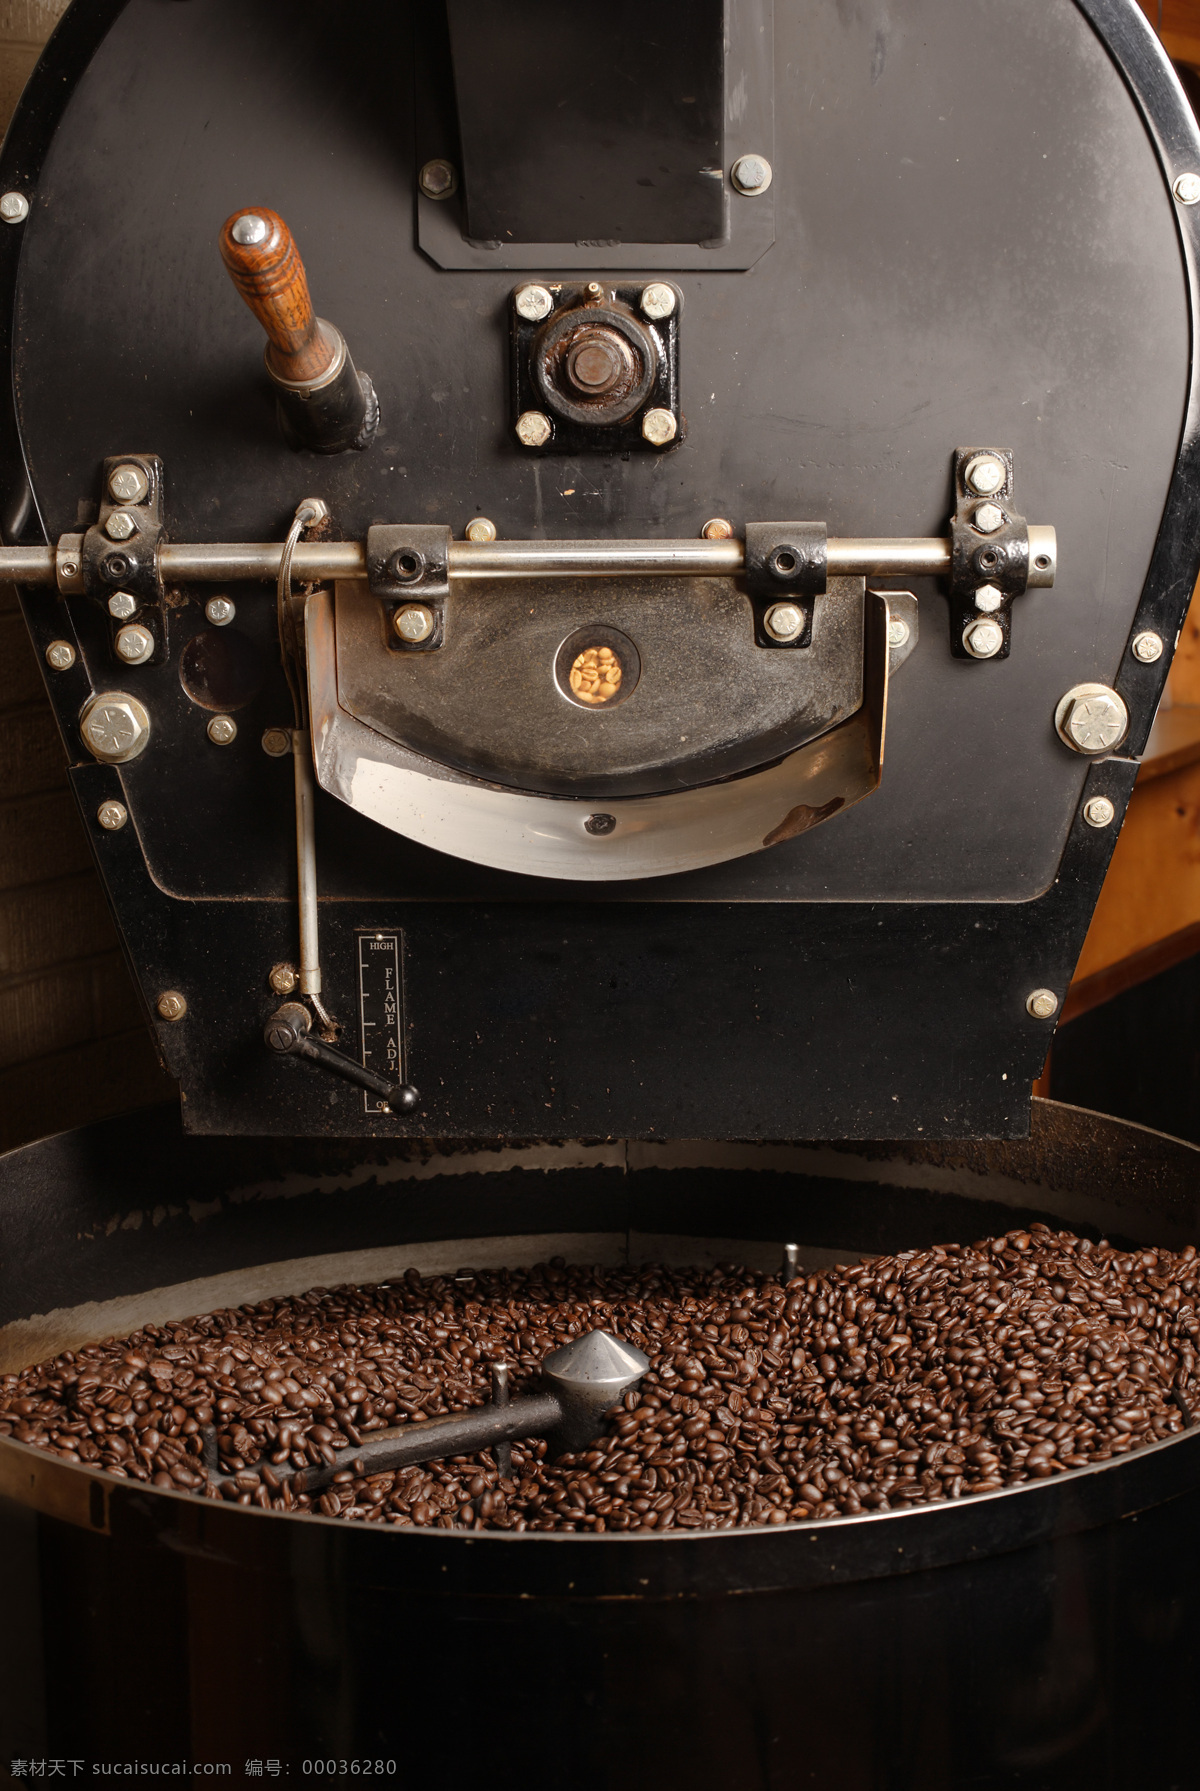 咖啡 研磨 机器 咖啡研磨机器 香浓咖啡 咖啡豆 休闲饮口 酒水饮料 咖啡摄影 咖啡图片 餐饮美食